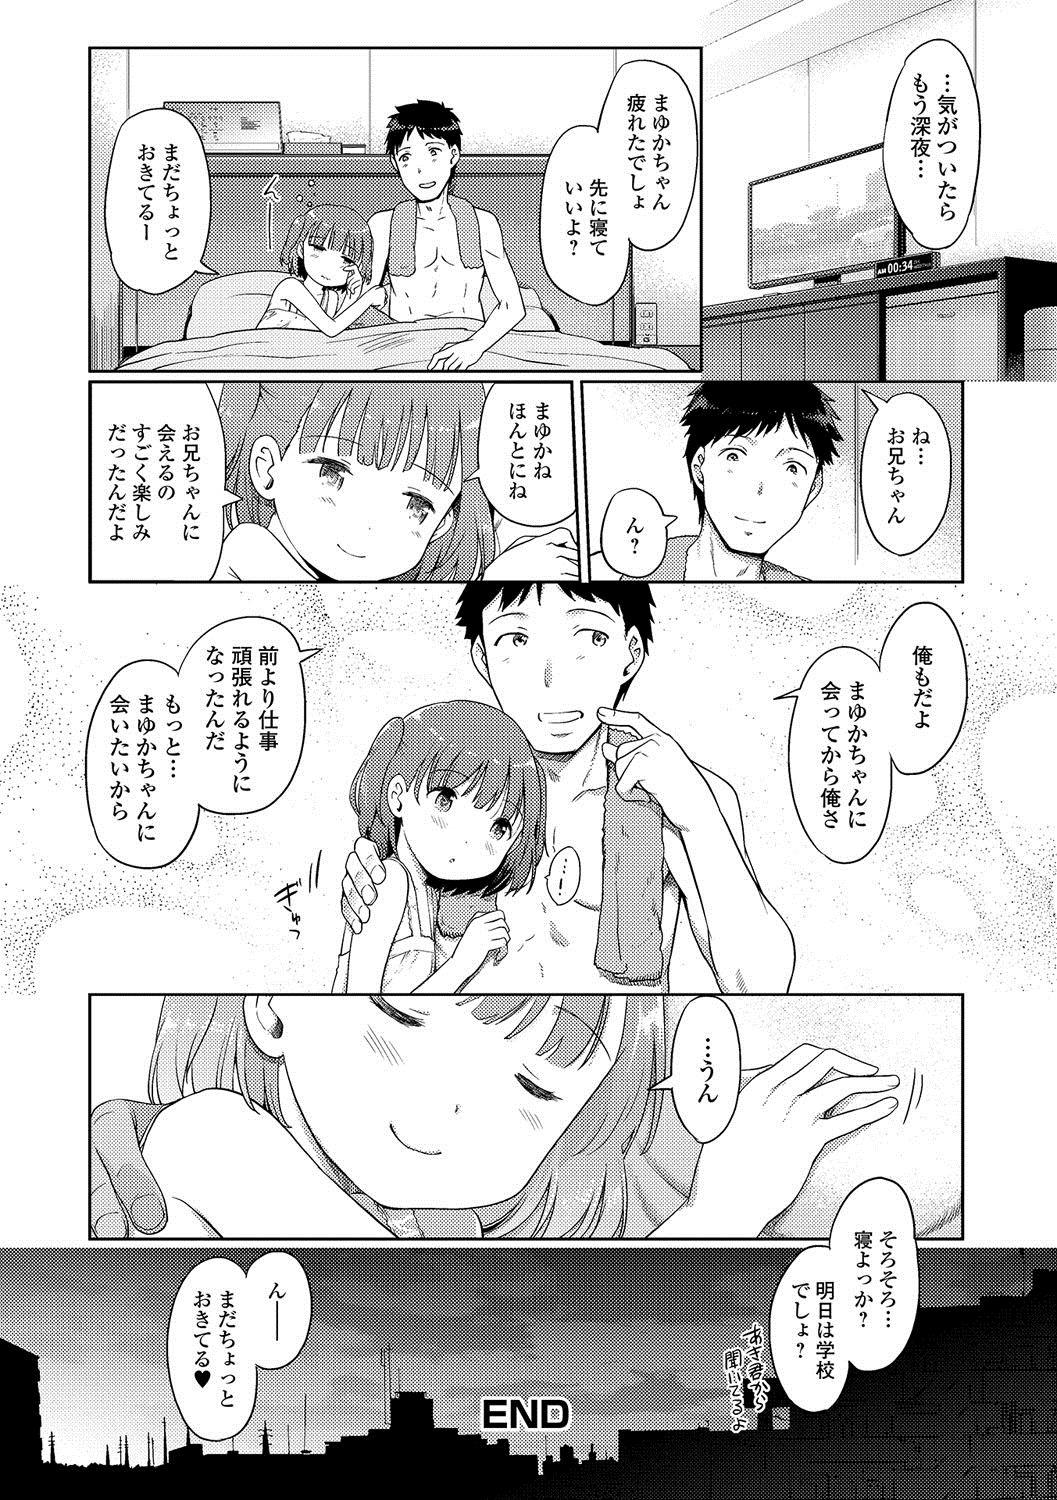 [Kiya Shii] Awa no Ohime-sama # 4 Mayuka-chan to Tengai Date (Digital Puni Pedo! Vol. 04) [Digital] 15